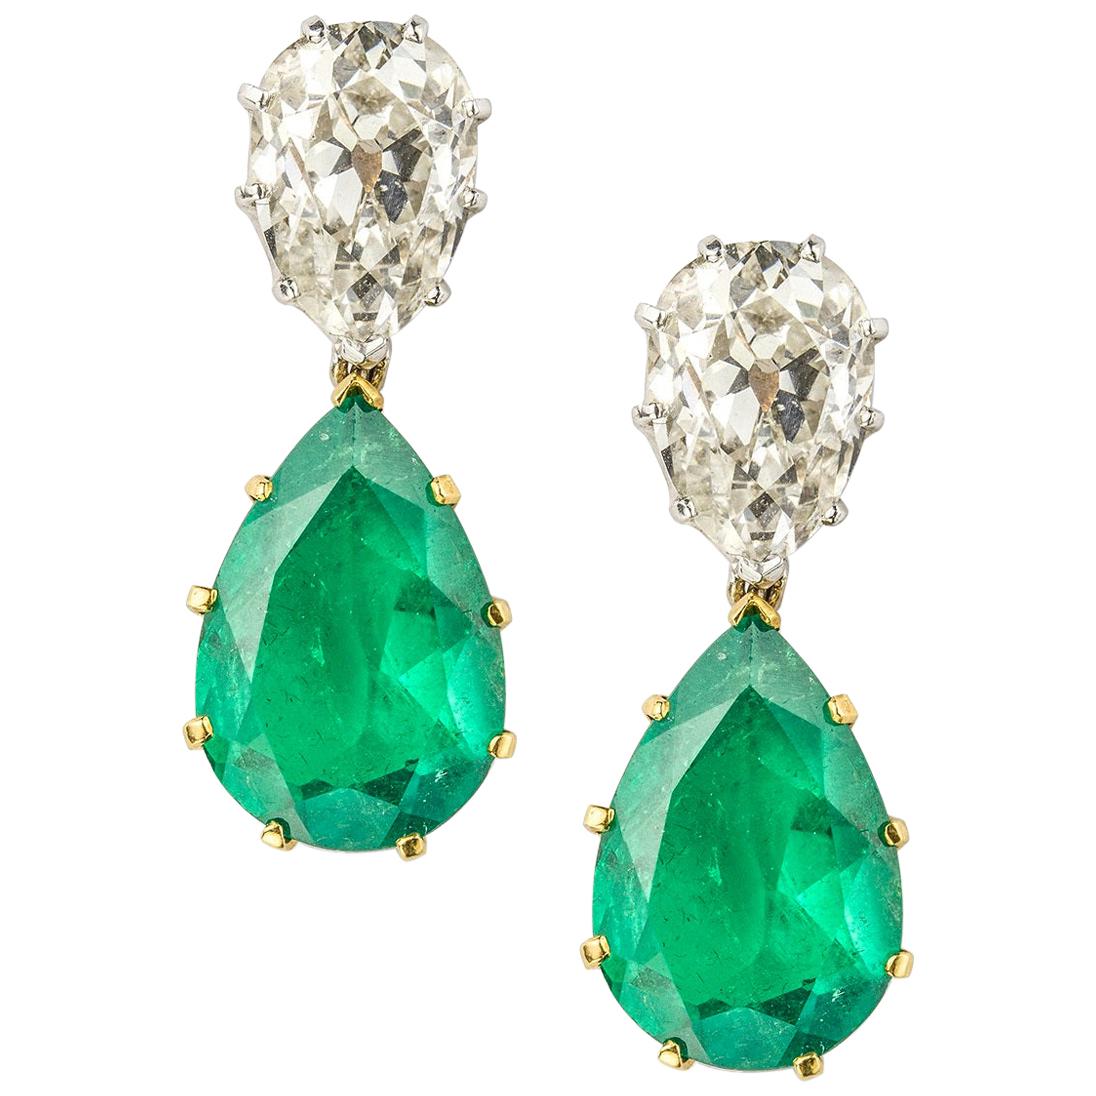 Pair of vintage Diamond and Emerald Drop Earrings